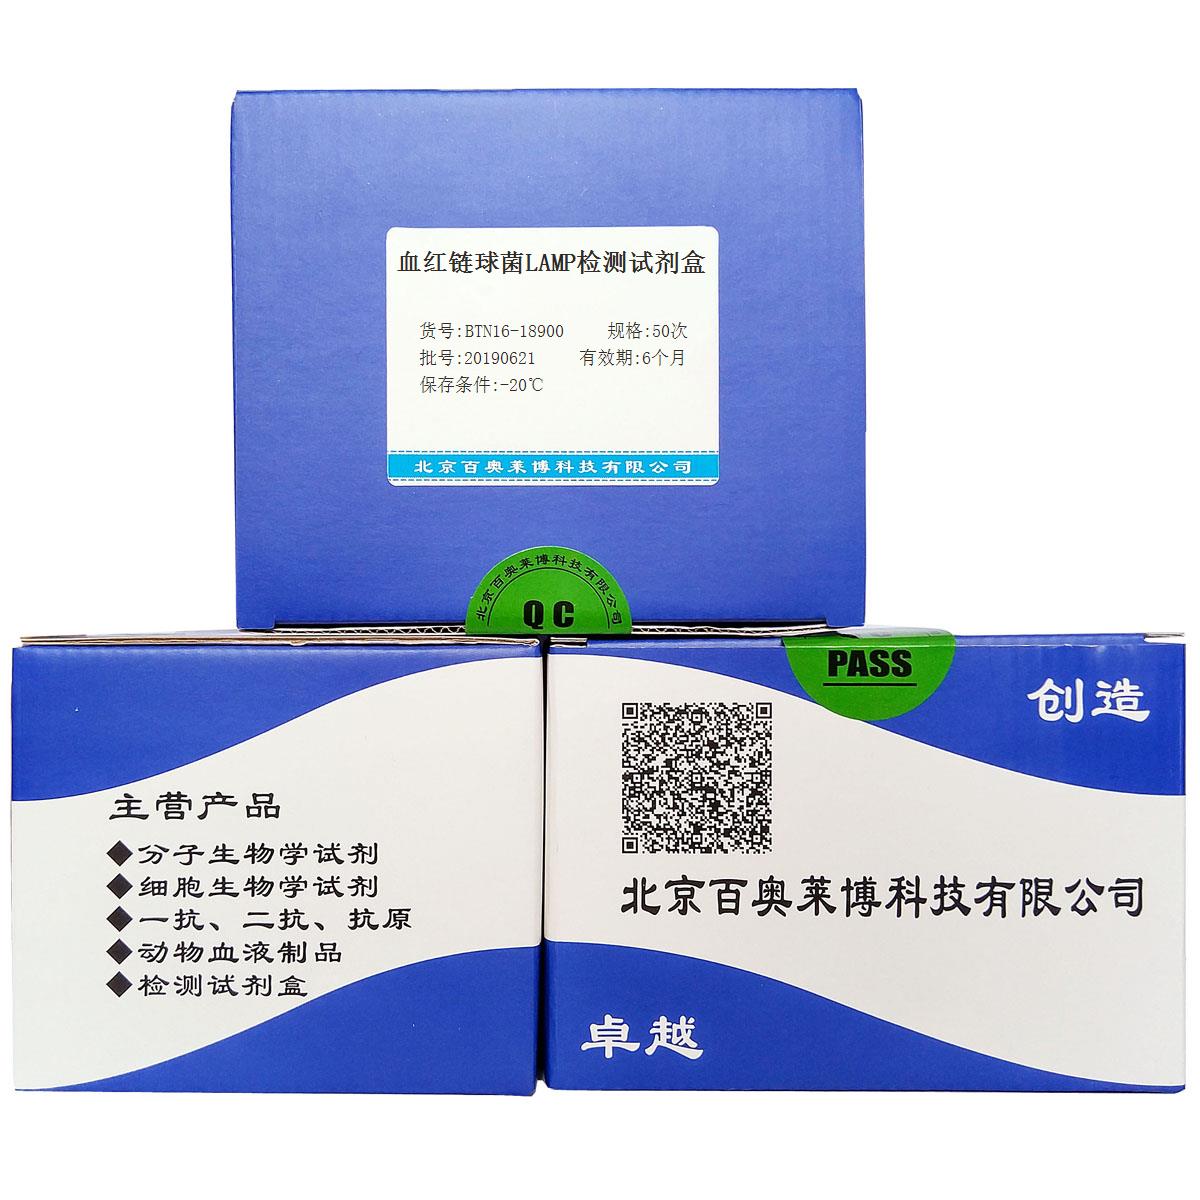 血红链球菌LAMP检测试剂盒北京厂家